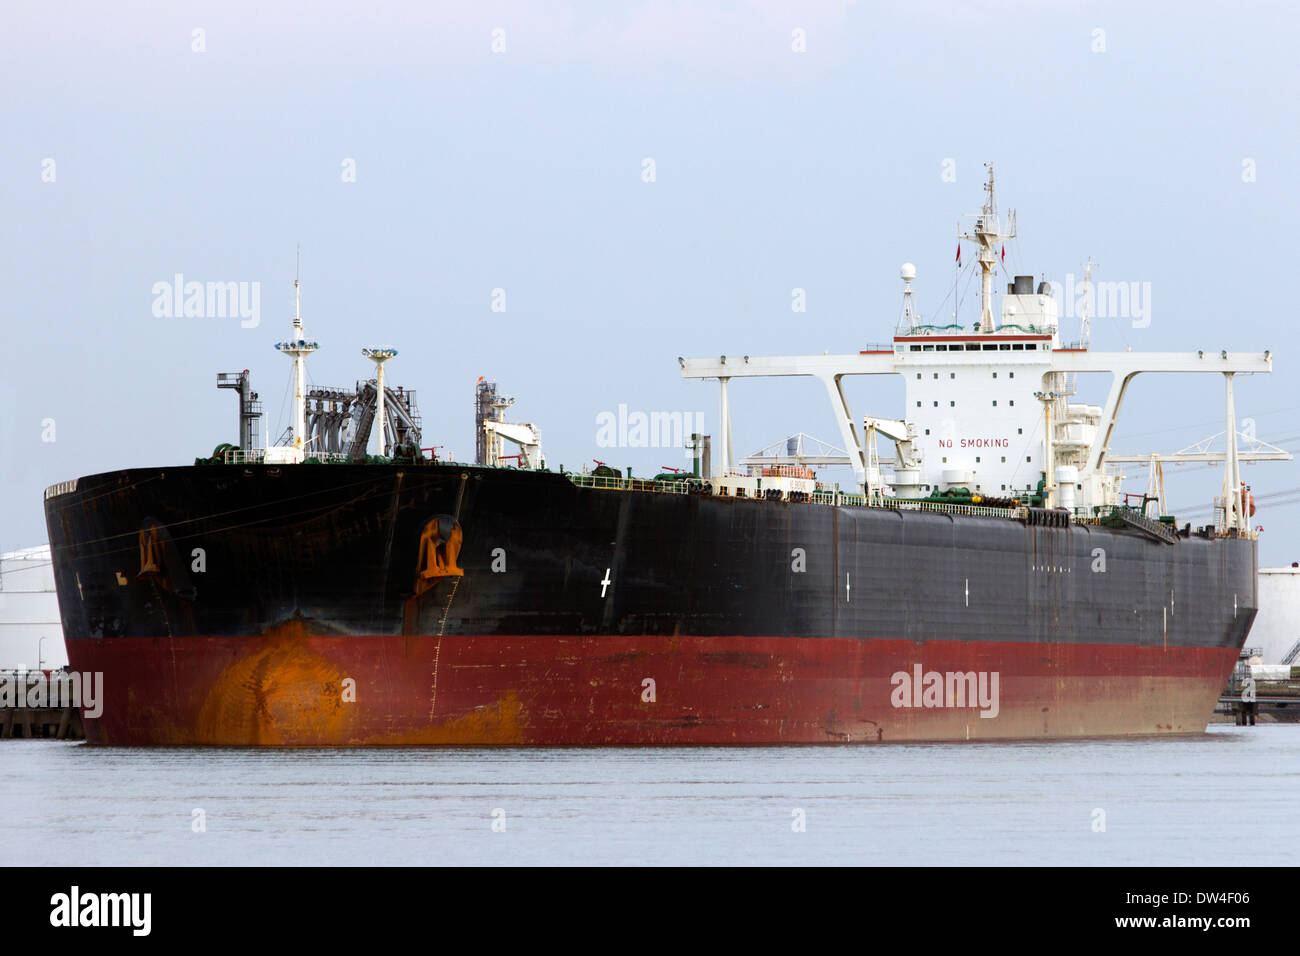 Large oil tanker in port Stock Photo